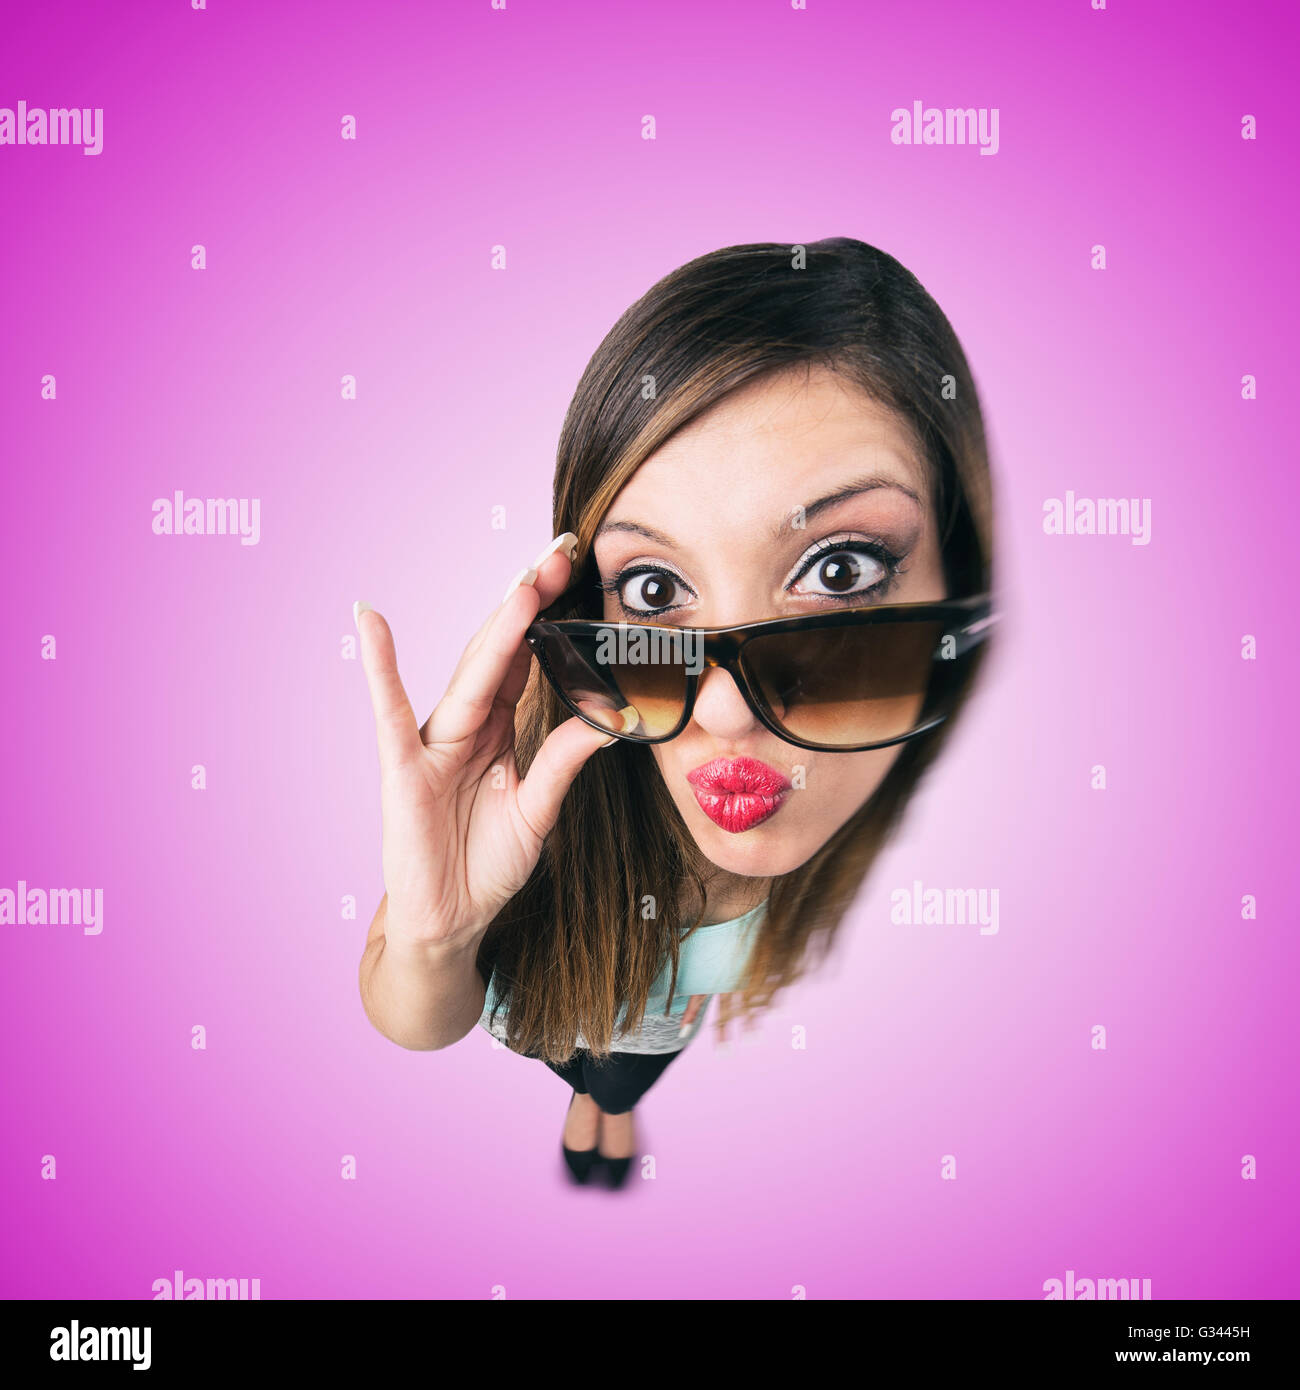 Funny Kissing Girl with Sunglasses ressemble à la caricature d'elle-même, l'objectif fish eye shot Banque D'Images